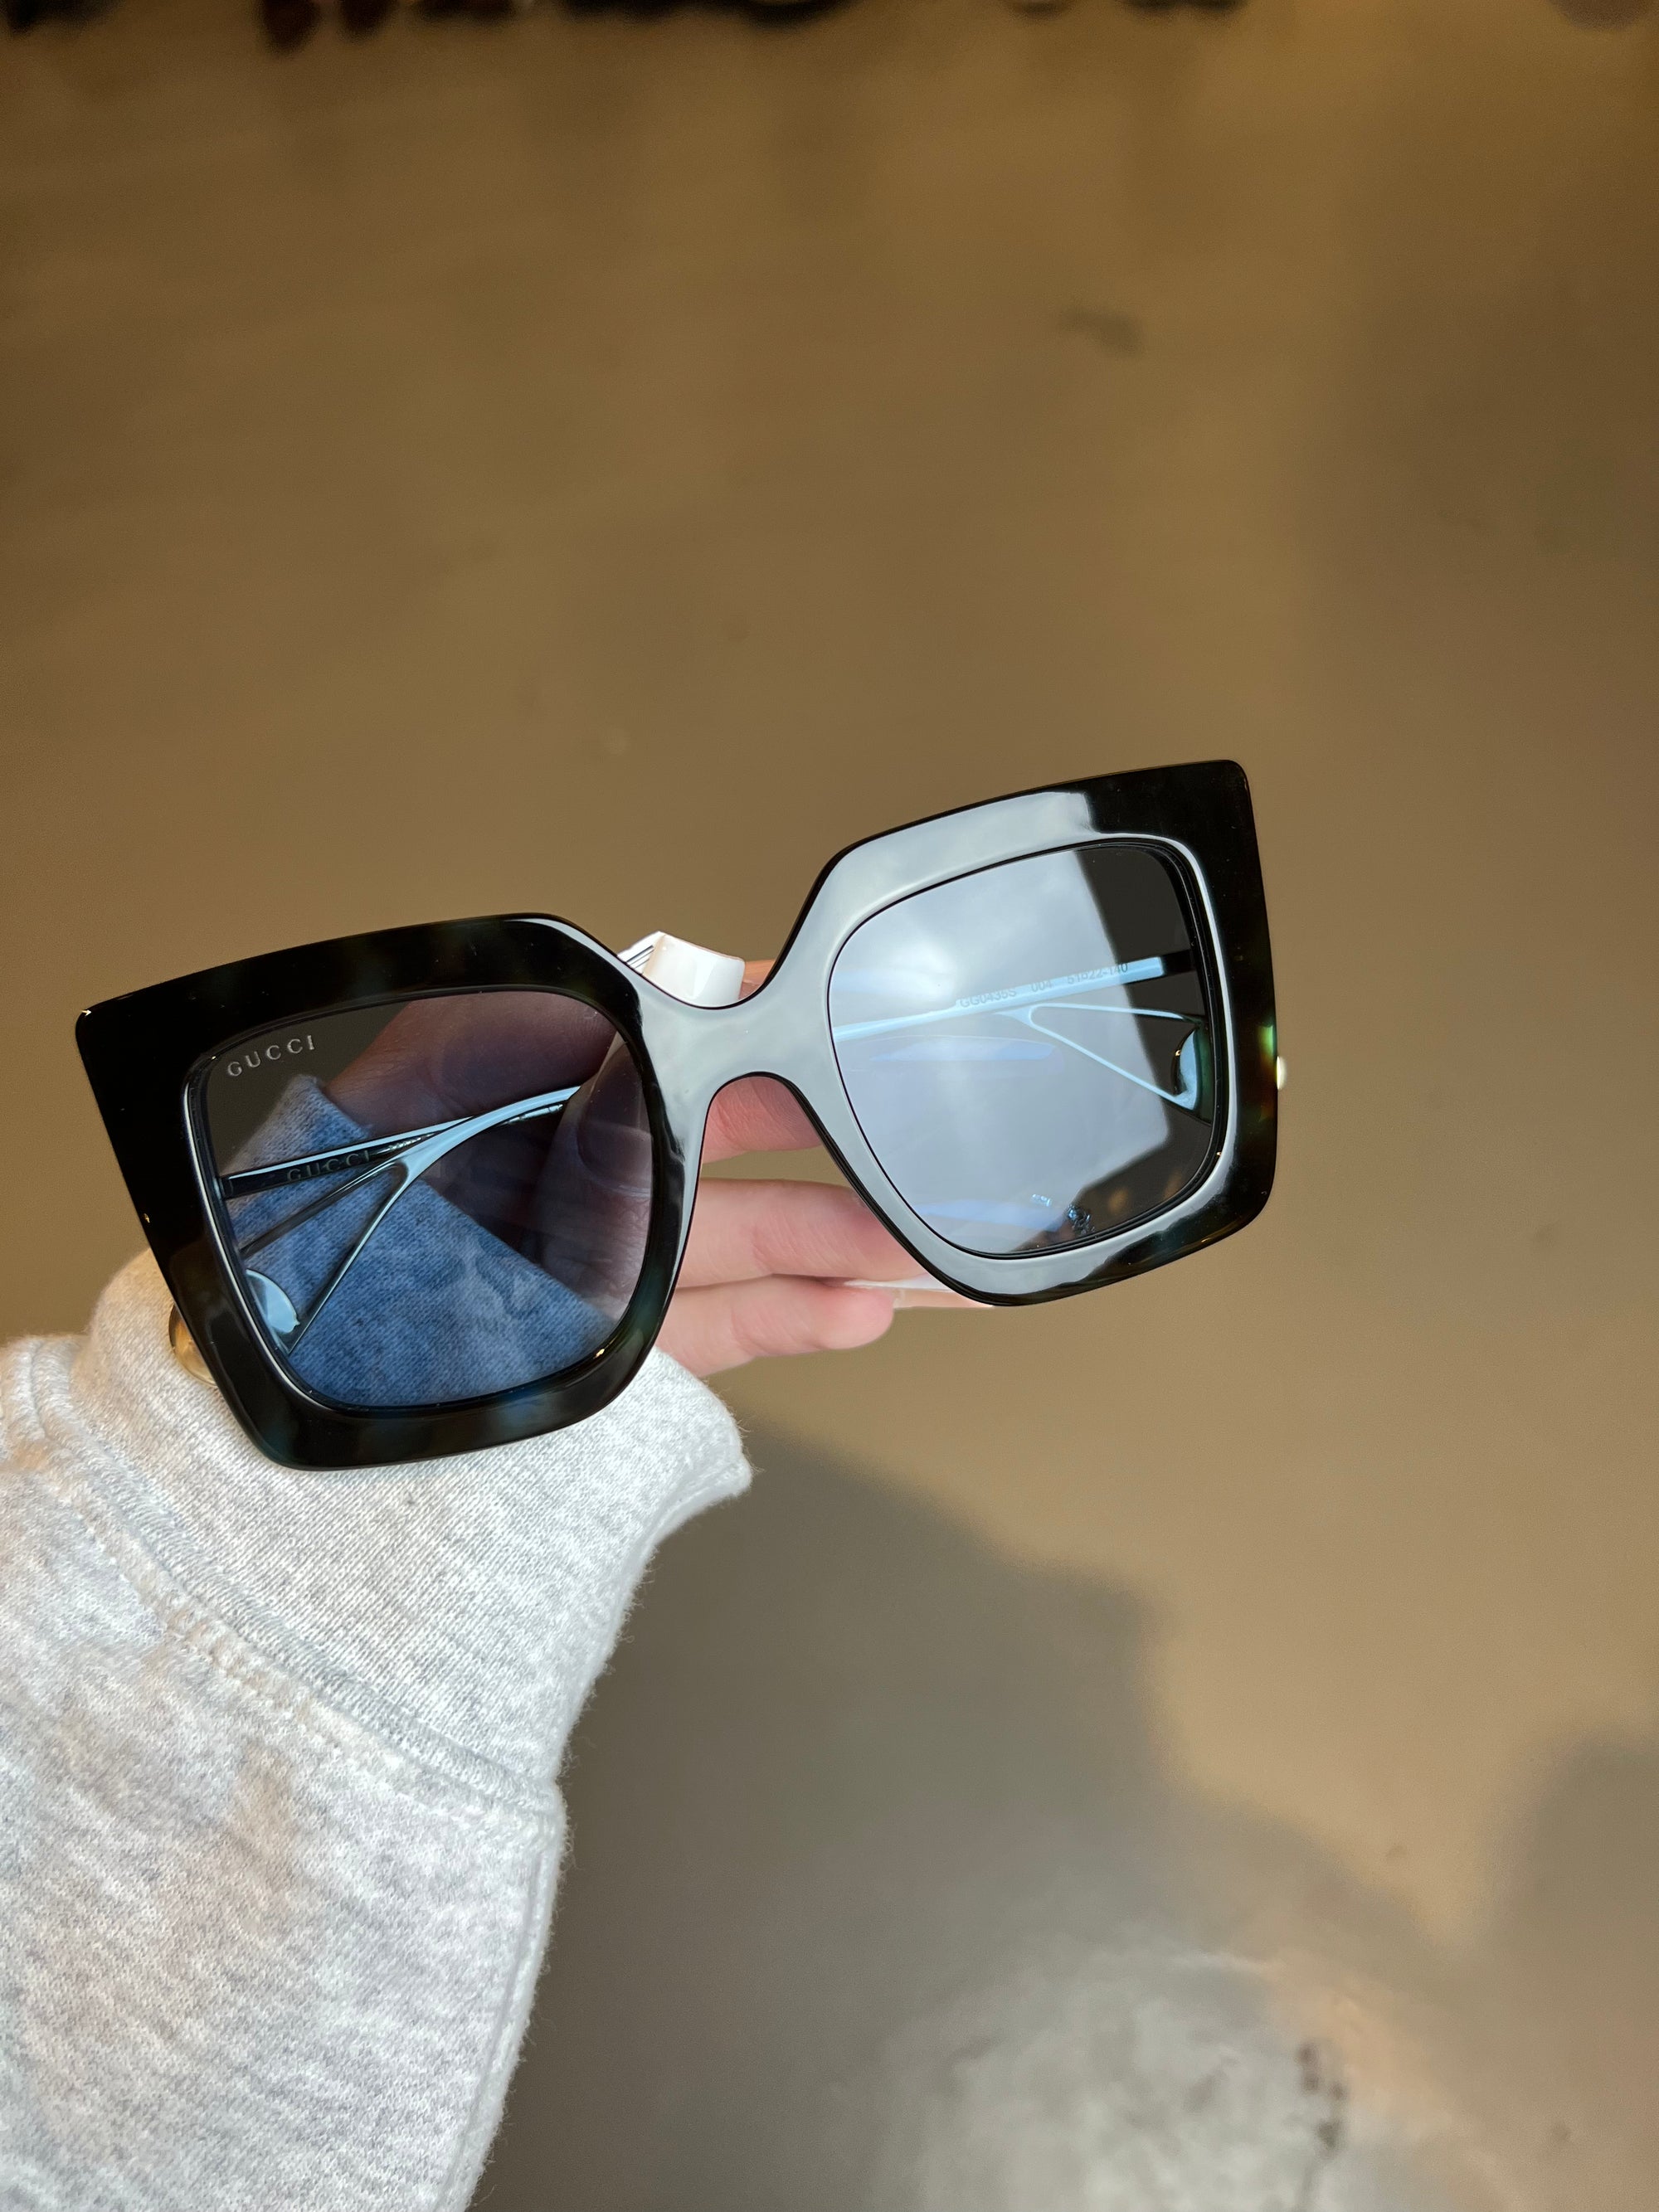 Produktbild der Gucci Sunglasses in Schwarz von vorne.